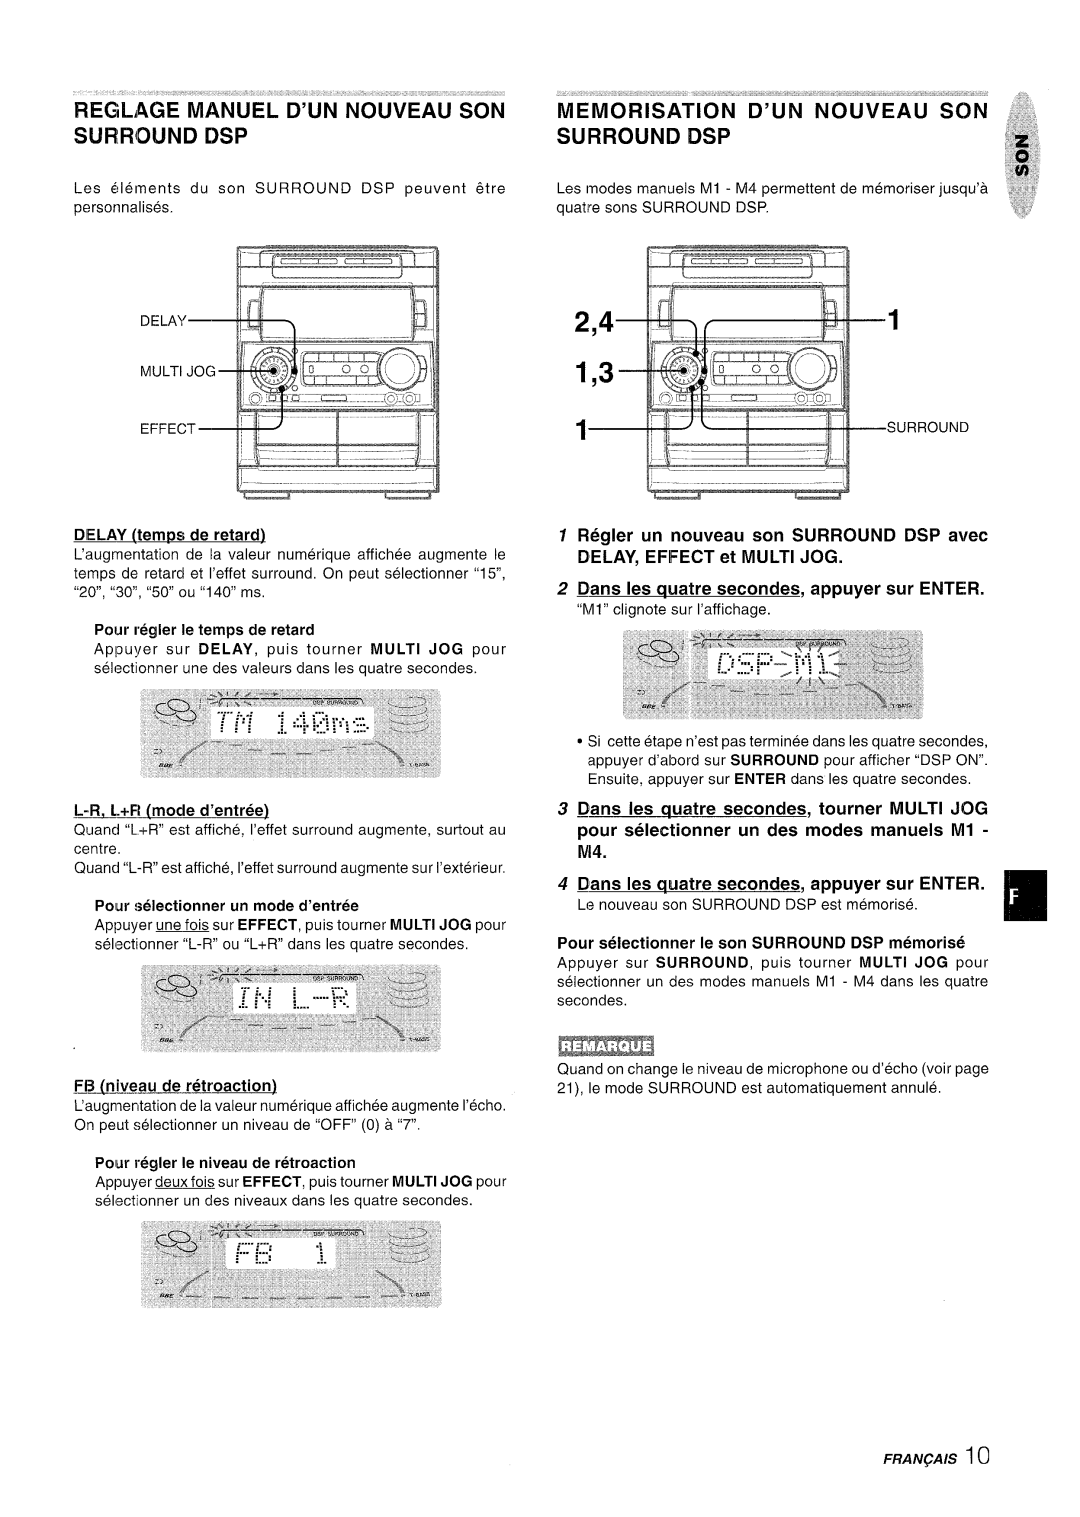 Aiwa NSX-A909 manual REGLAGE MANUEL D’UN’”NOUVEAU SON SURROUND tSP, Bans Ies cwatre secondes, appuyer sur ENTER, Fran~A/S 